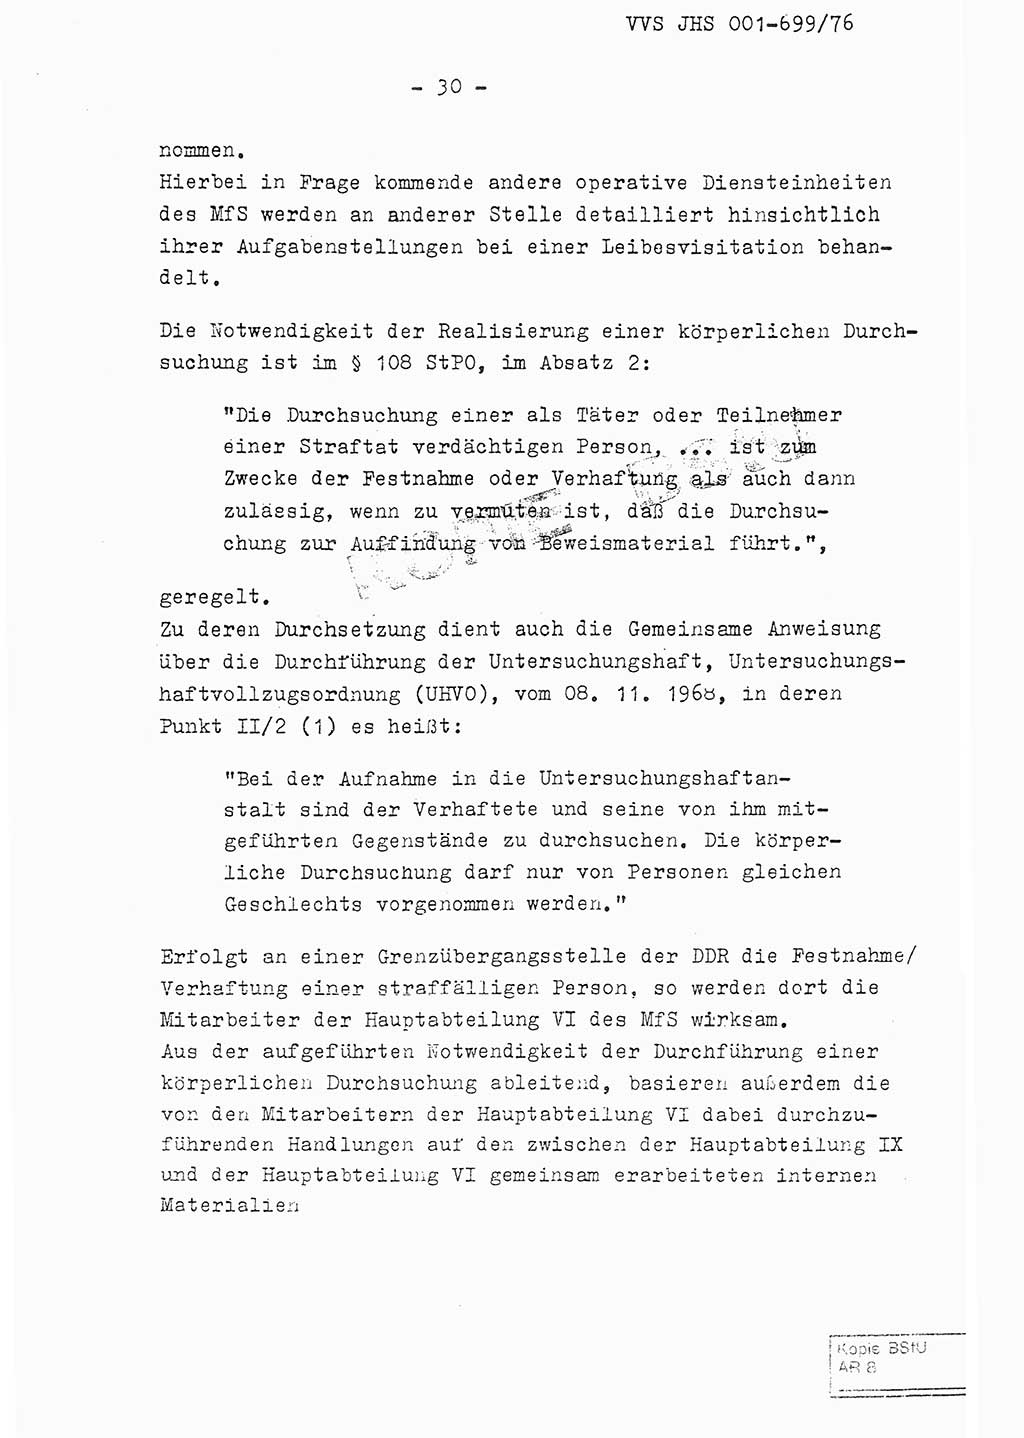 Fachschulabschlußarbeit Leutnant Volkmar Taubert (HA Ⅸ/9), Leutnant Axel Naumann (HA Ⅸ/9), Unterleutnat Detlef Debski (HA Ⅸ/9), Ministerium für Staatssicherheit (MfS) [Deutsche Demokratische Republik (DDR)], Juristische Hochschule (JHS), Vertrauliche Verschlußsache (VVS) 001-699/76, Potsdam 1976, Seite 30 (FS-Abschl.-Arb. MfS DDR JHS VVS 001-699/76 1976, S. 30)